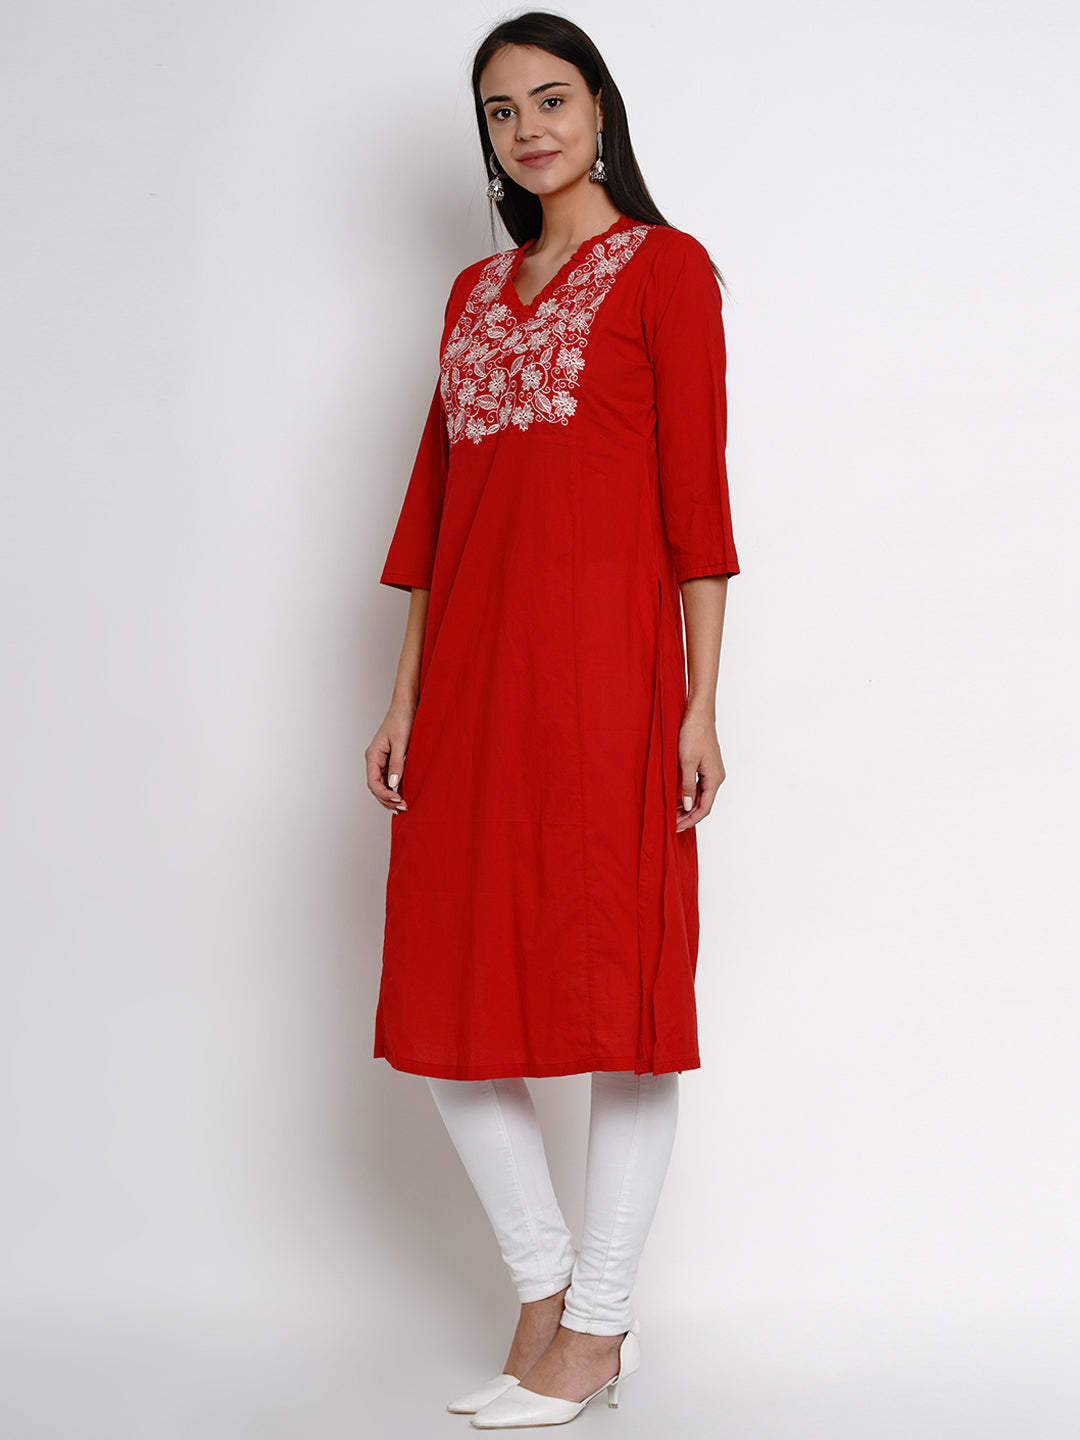 Women's  Red Kurta With White Yoke Embroidered Design Straight Kurta - Bhama Couture